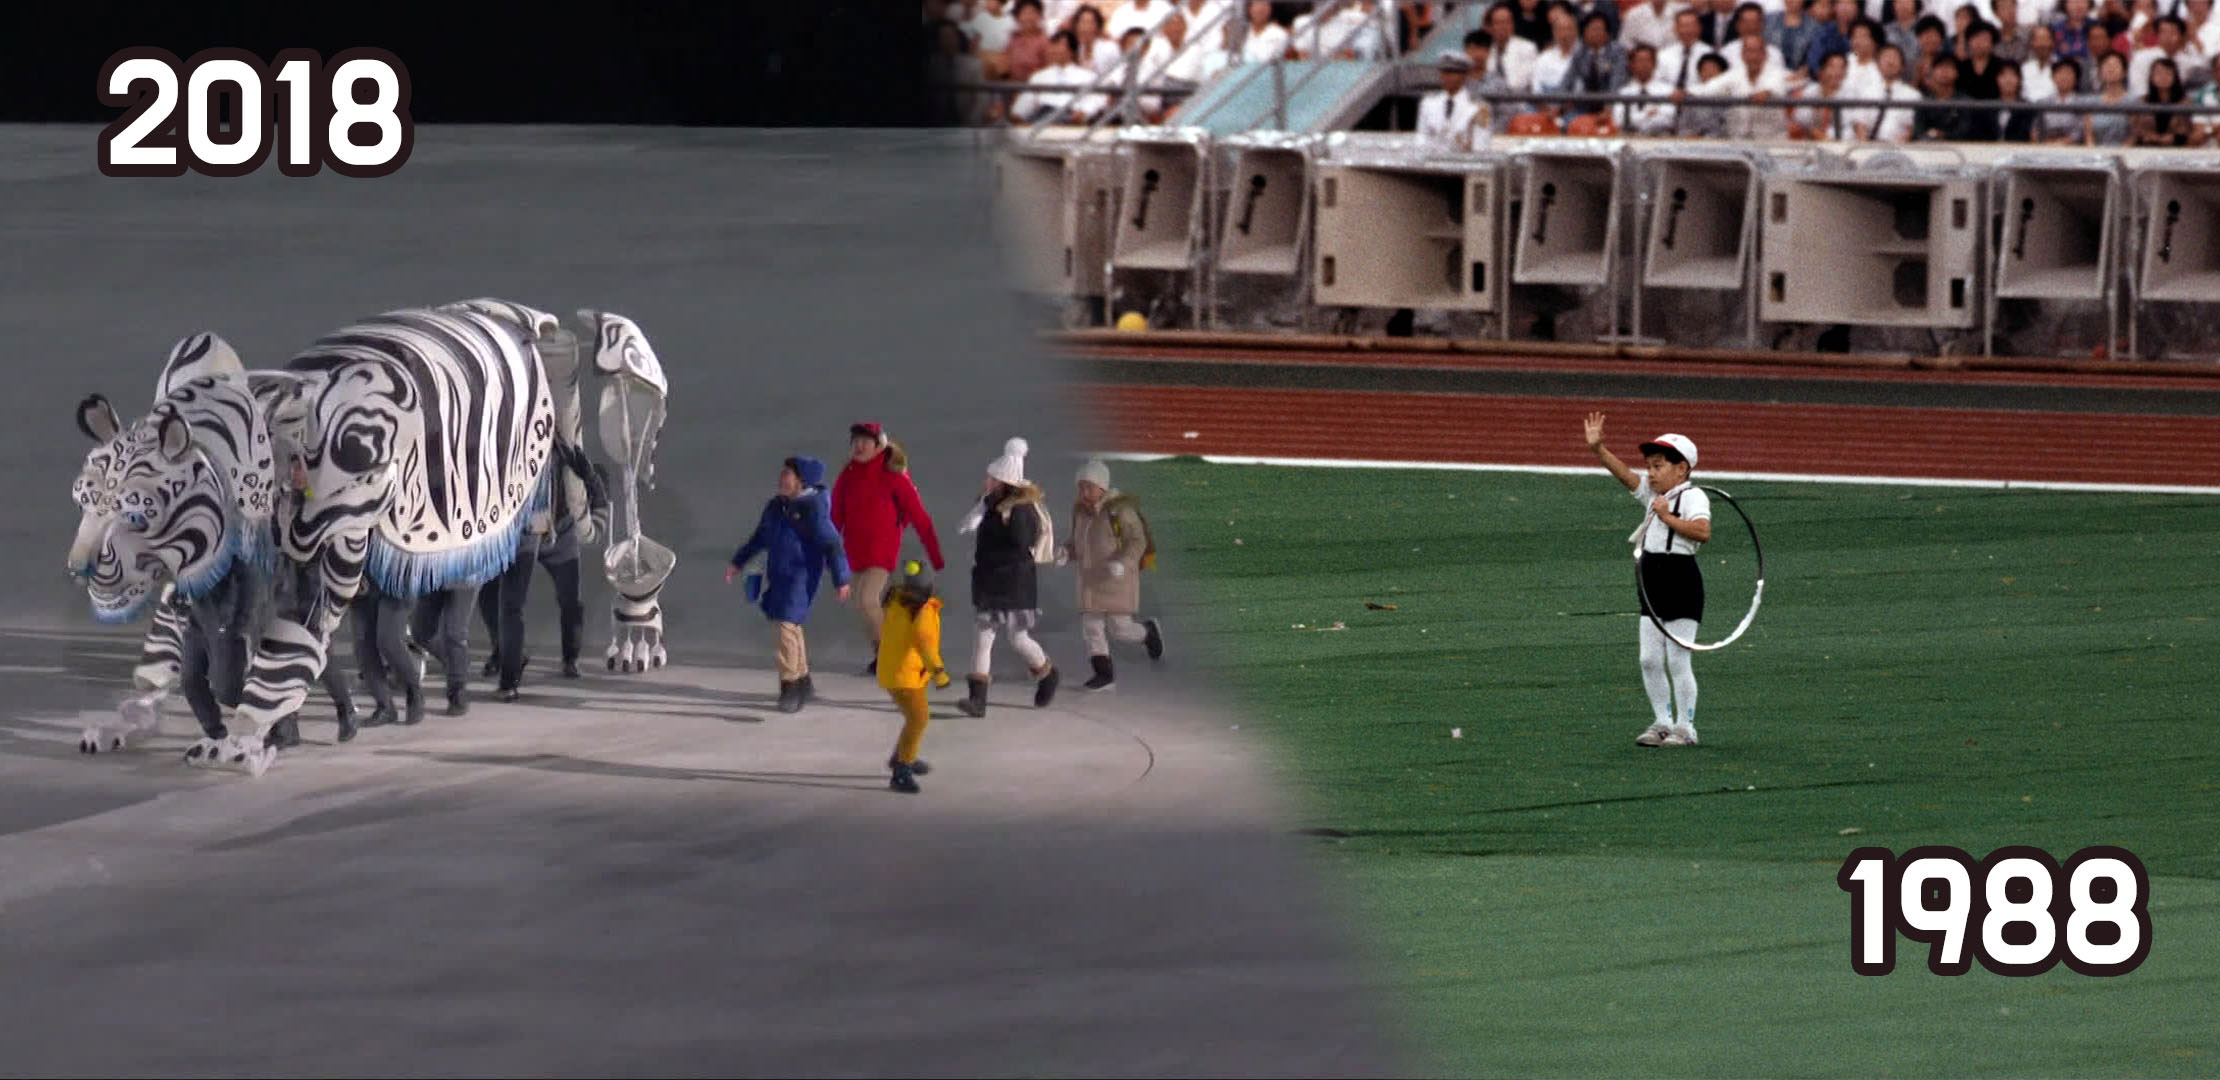 평창 동계올림픽 모의 개막식에서 공개된 모습(좌)과 1988 서울 올림픽 개막식에 등장한 굴렁쇠 소년(우)